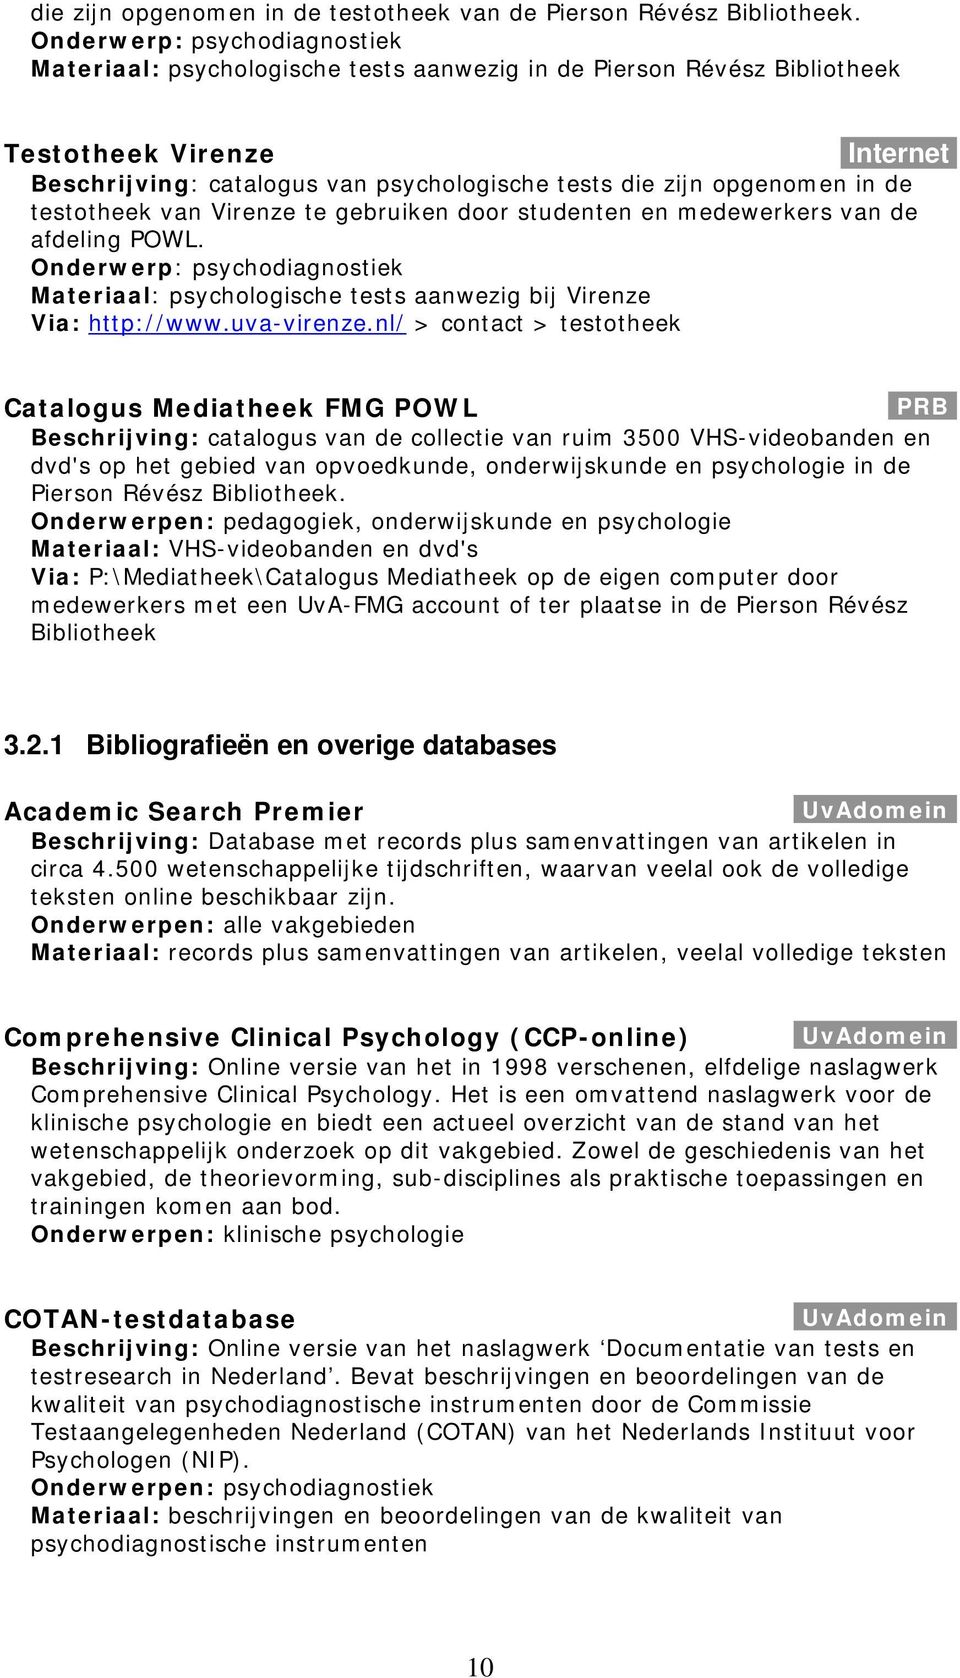 Onderwerp: psychodiagnostiek Materiaal: psychologische tests aanwezig bij Virenze Via: http://www.uva-virenze.nl/ > contact > testotheek Catalogus Mediatheek FMG POWL.PRB.